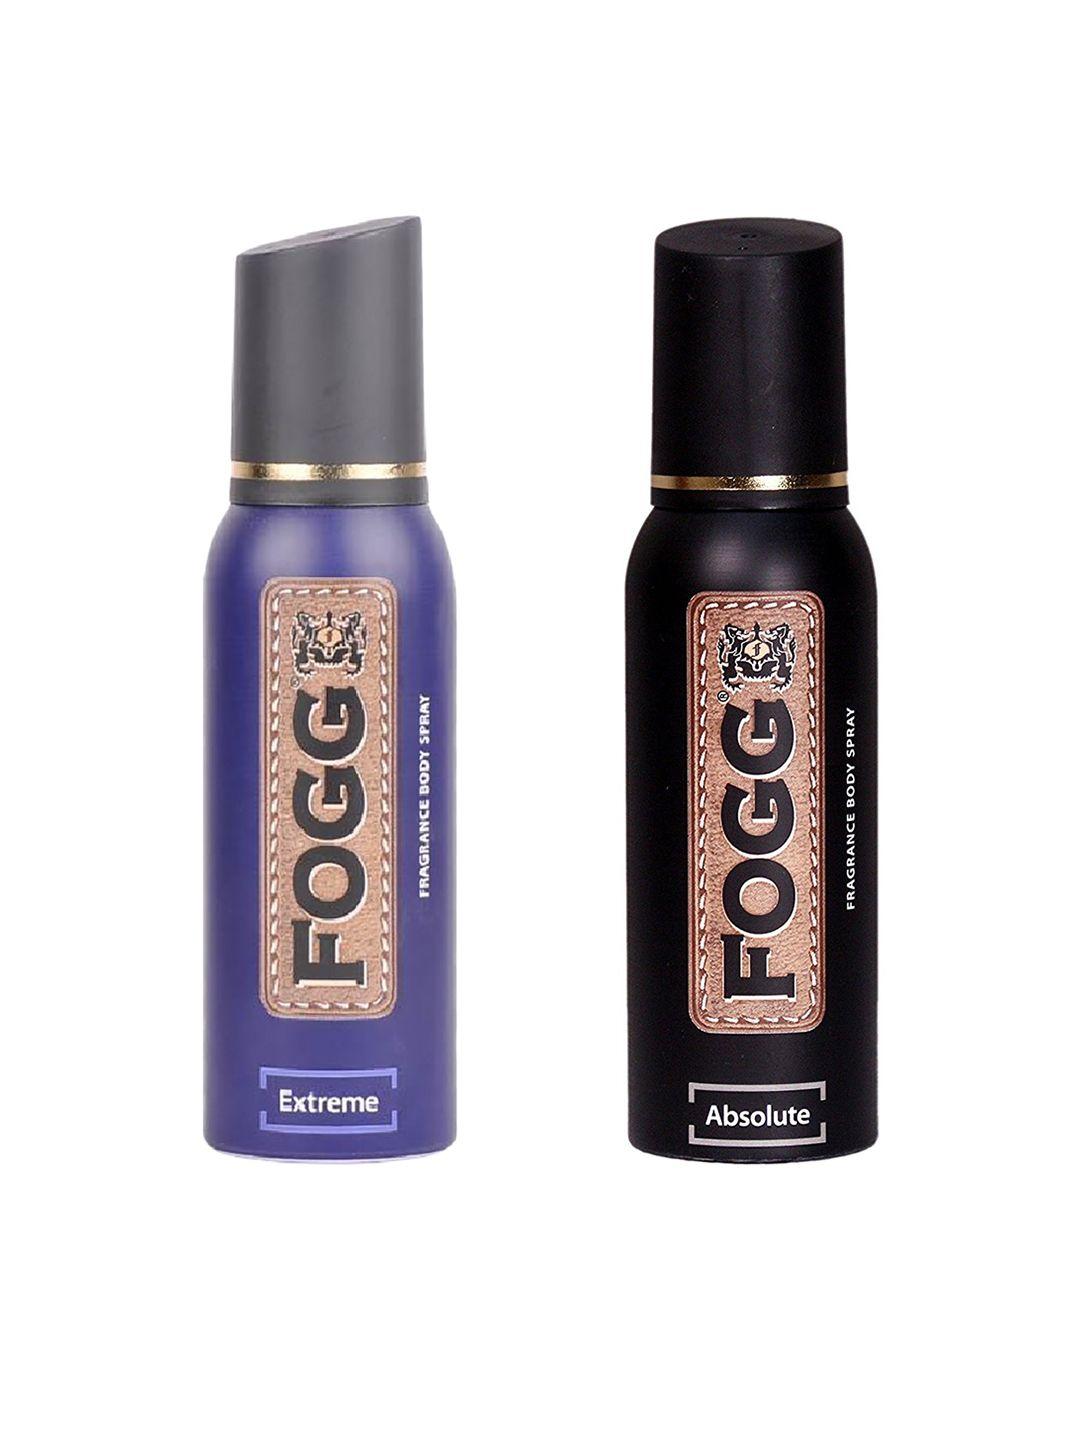 fogg unisex extreme fragrance body spray & absolute fragrance body spray